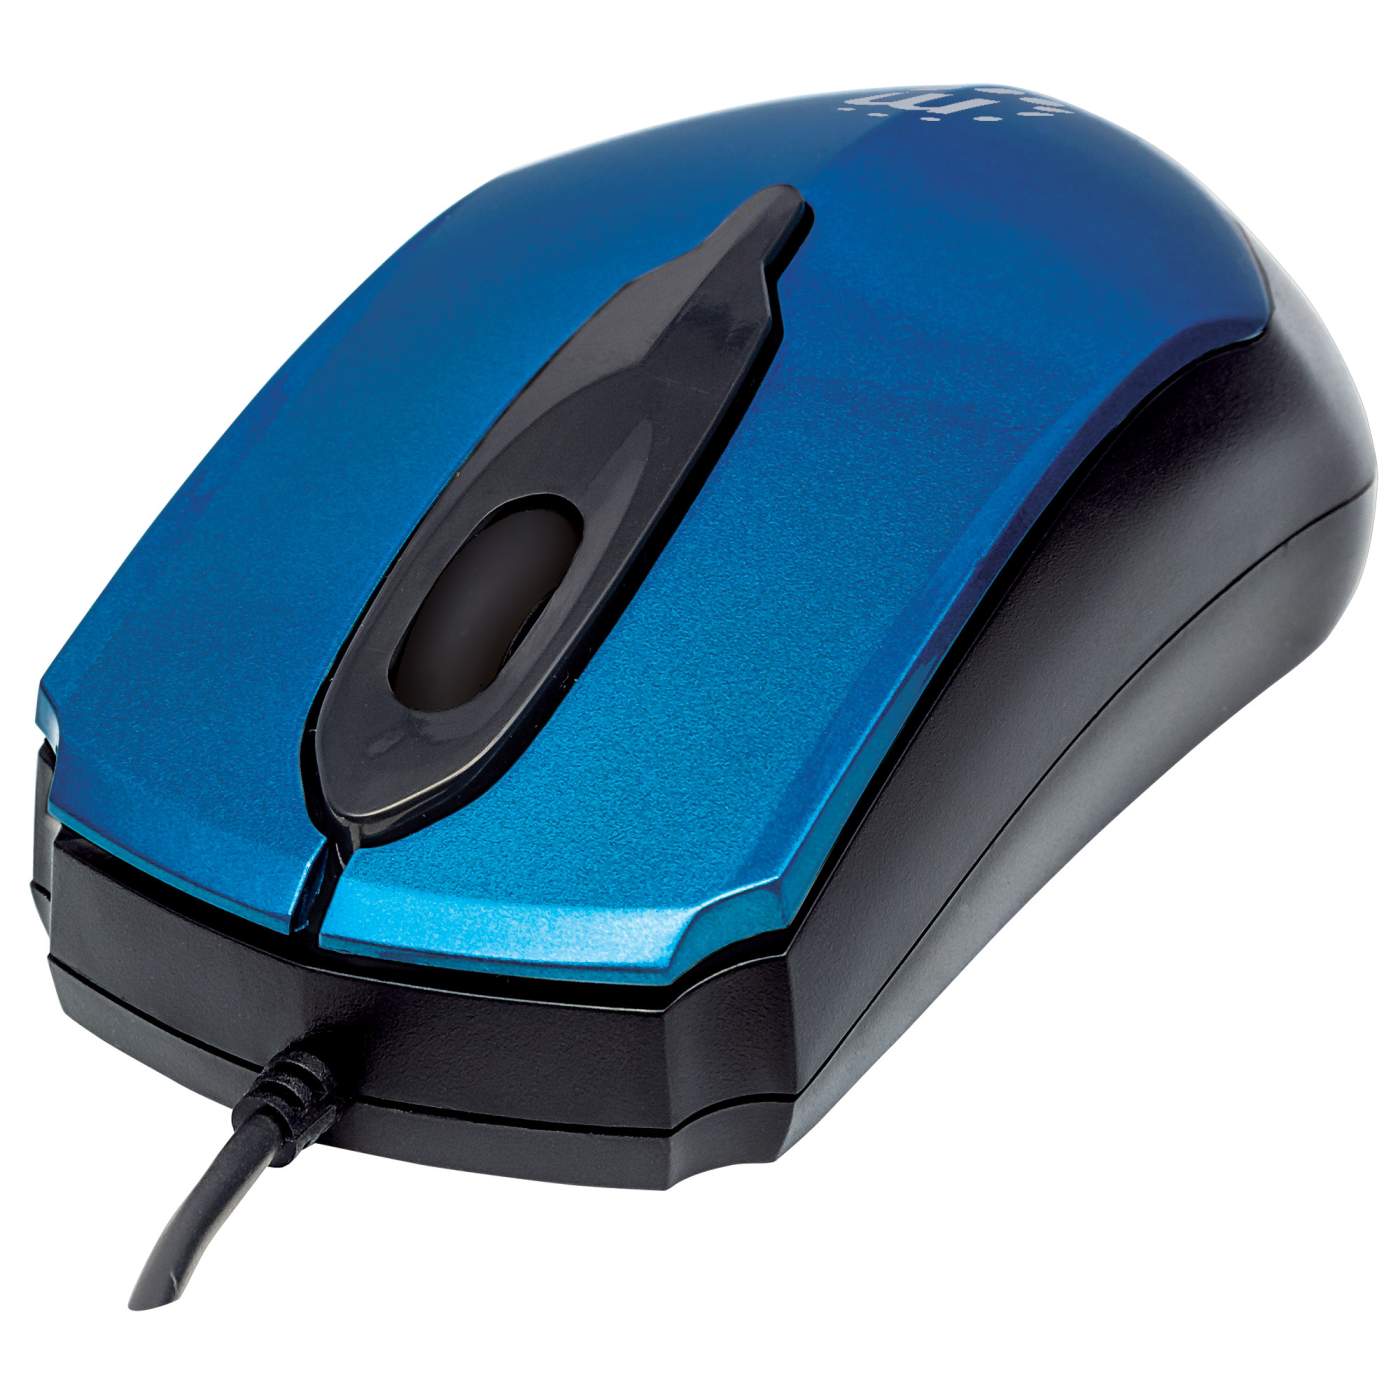 Edge Optical USB Mouse Image 1